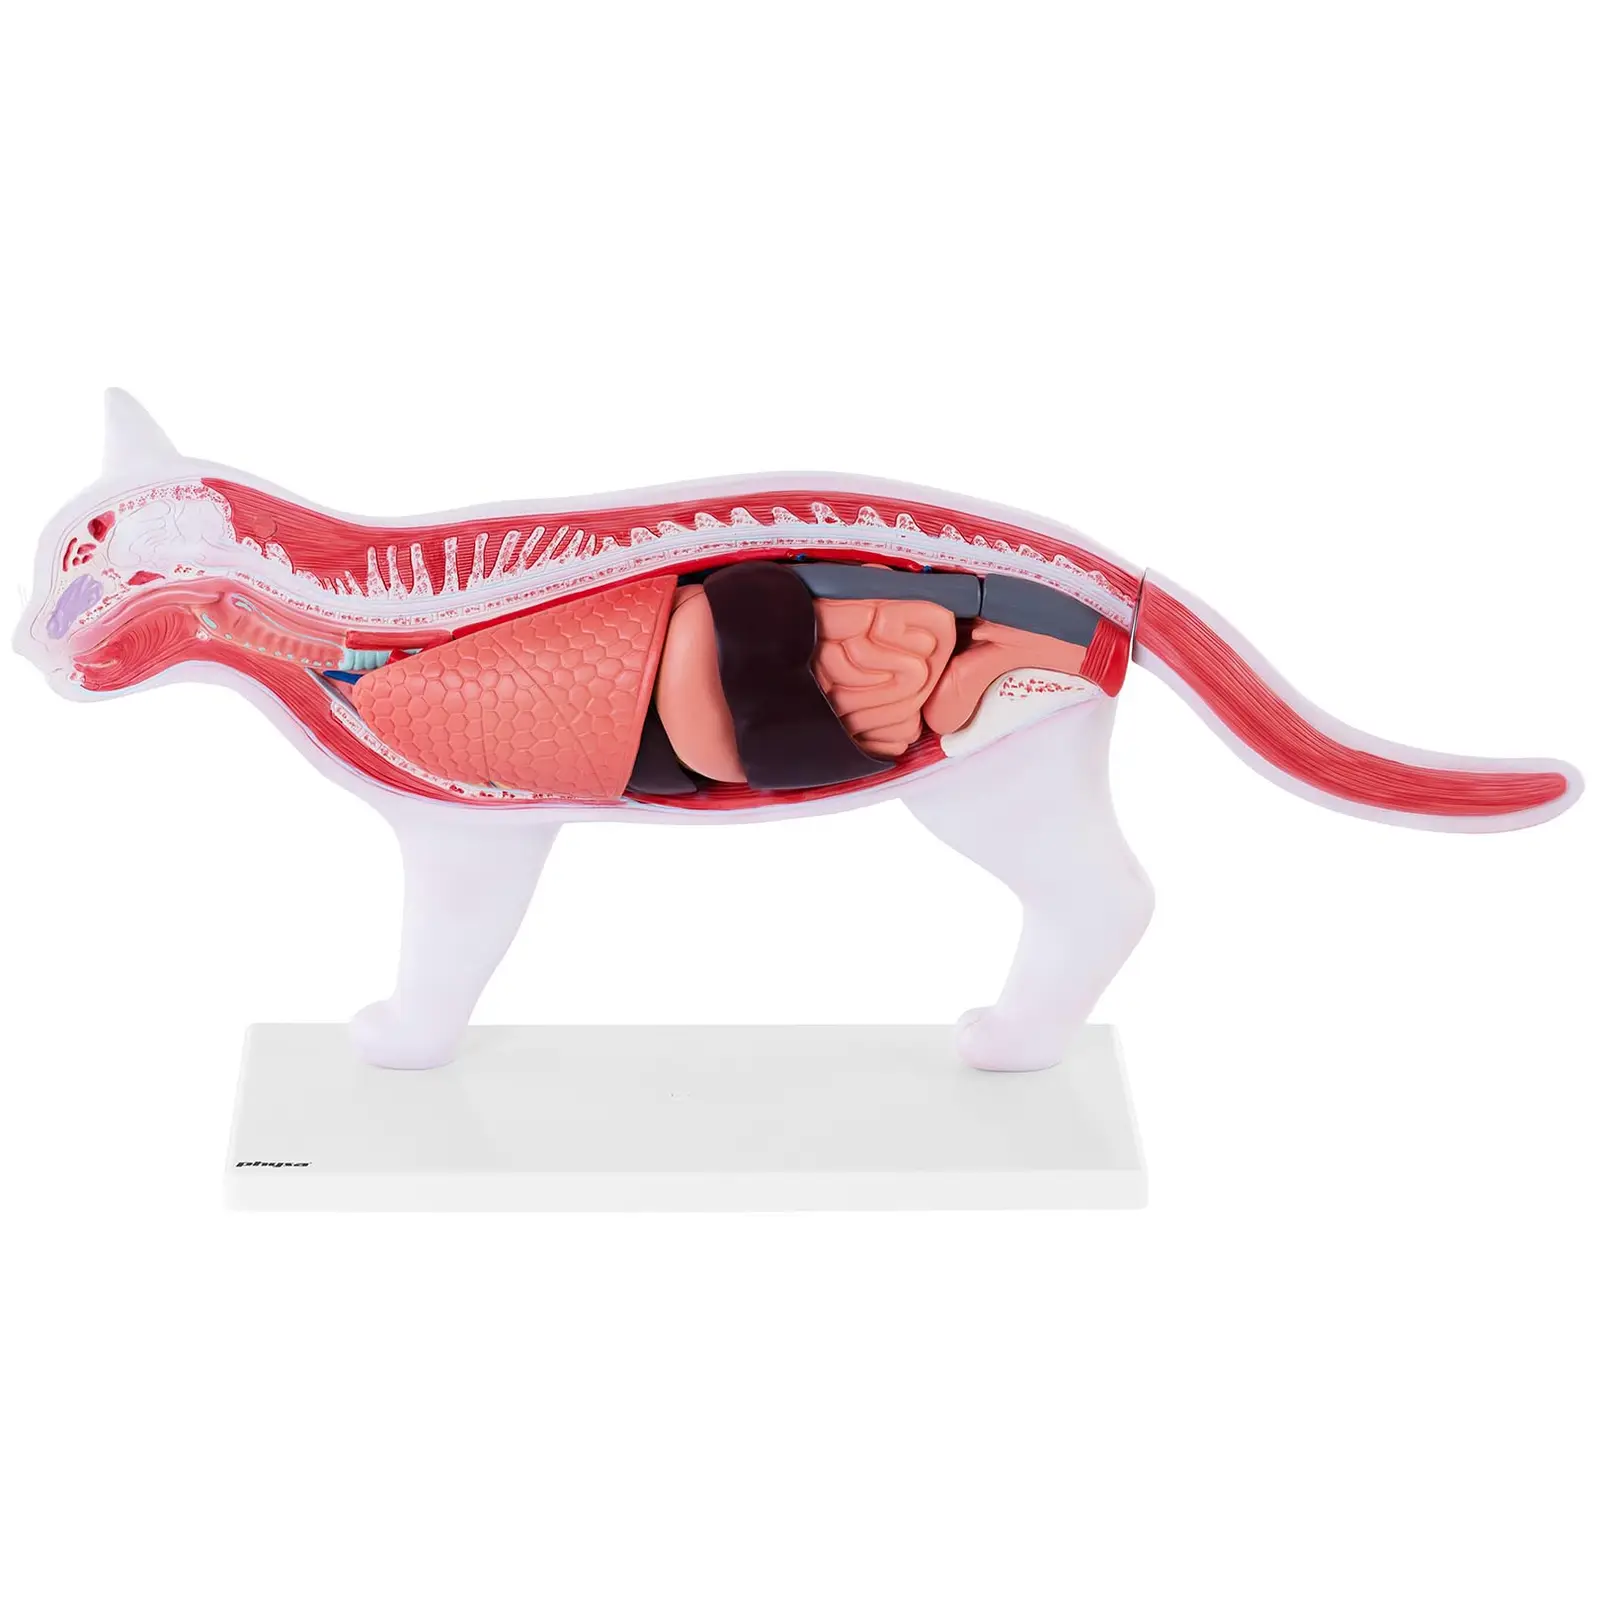 Model kočky - s vnitřními orgány